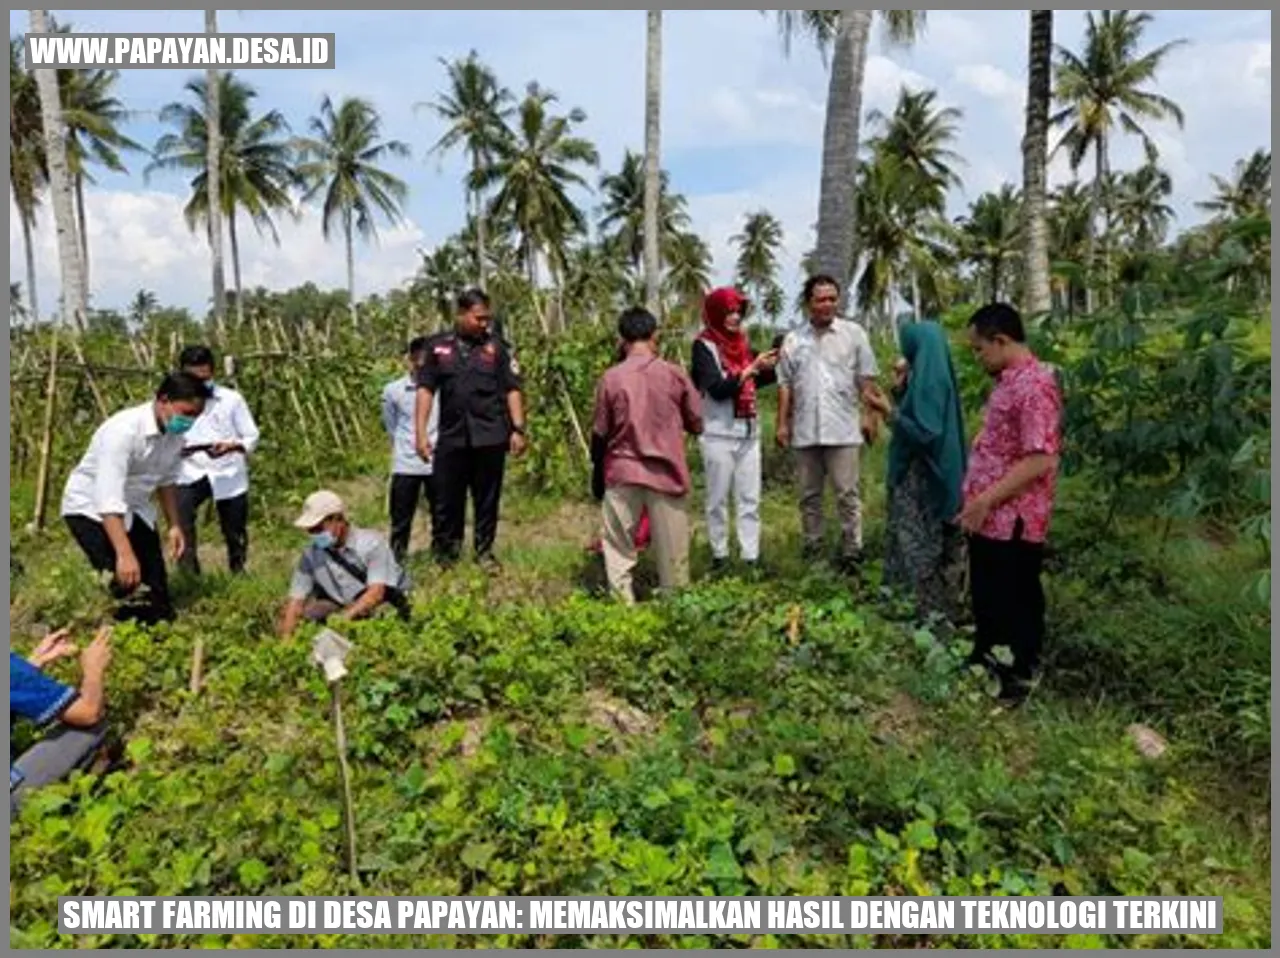 Smart Farming di Desa Papayan: Memaksimalkan Hasil dengan Teknologi Terkini